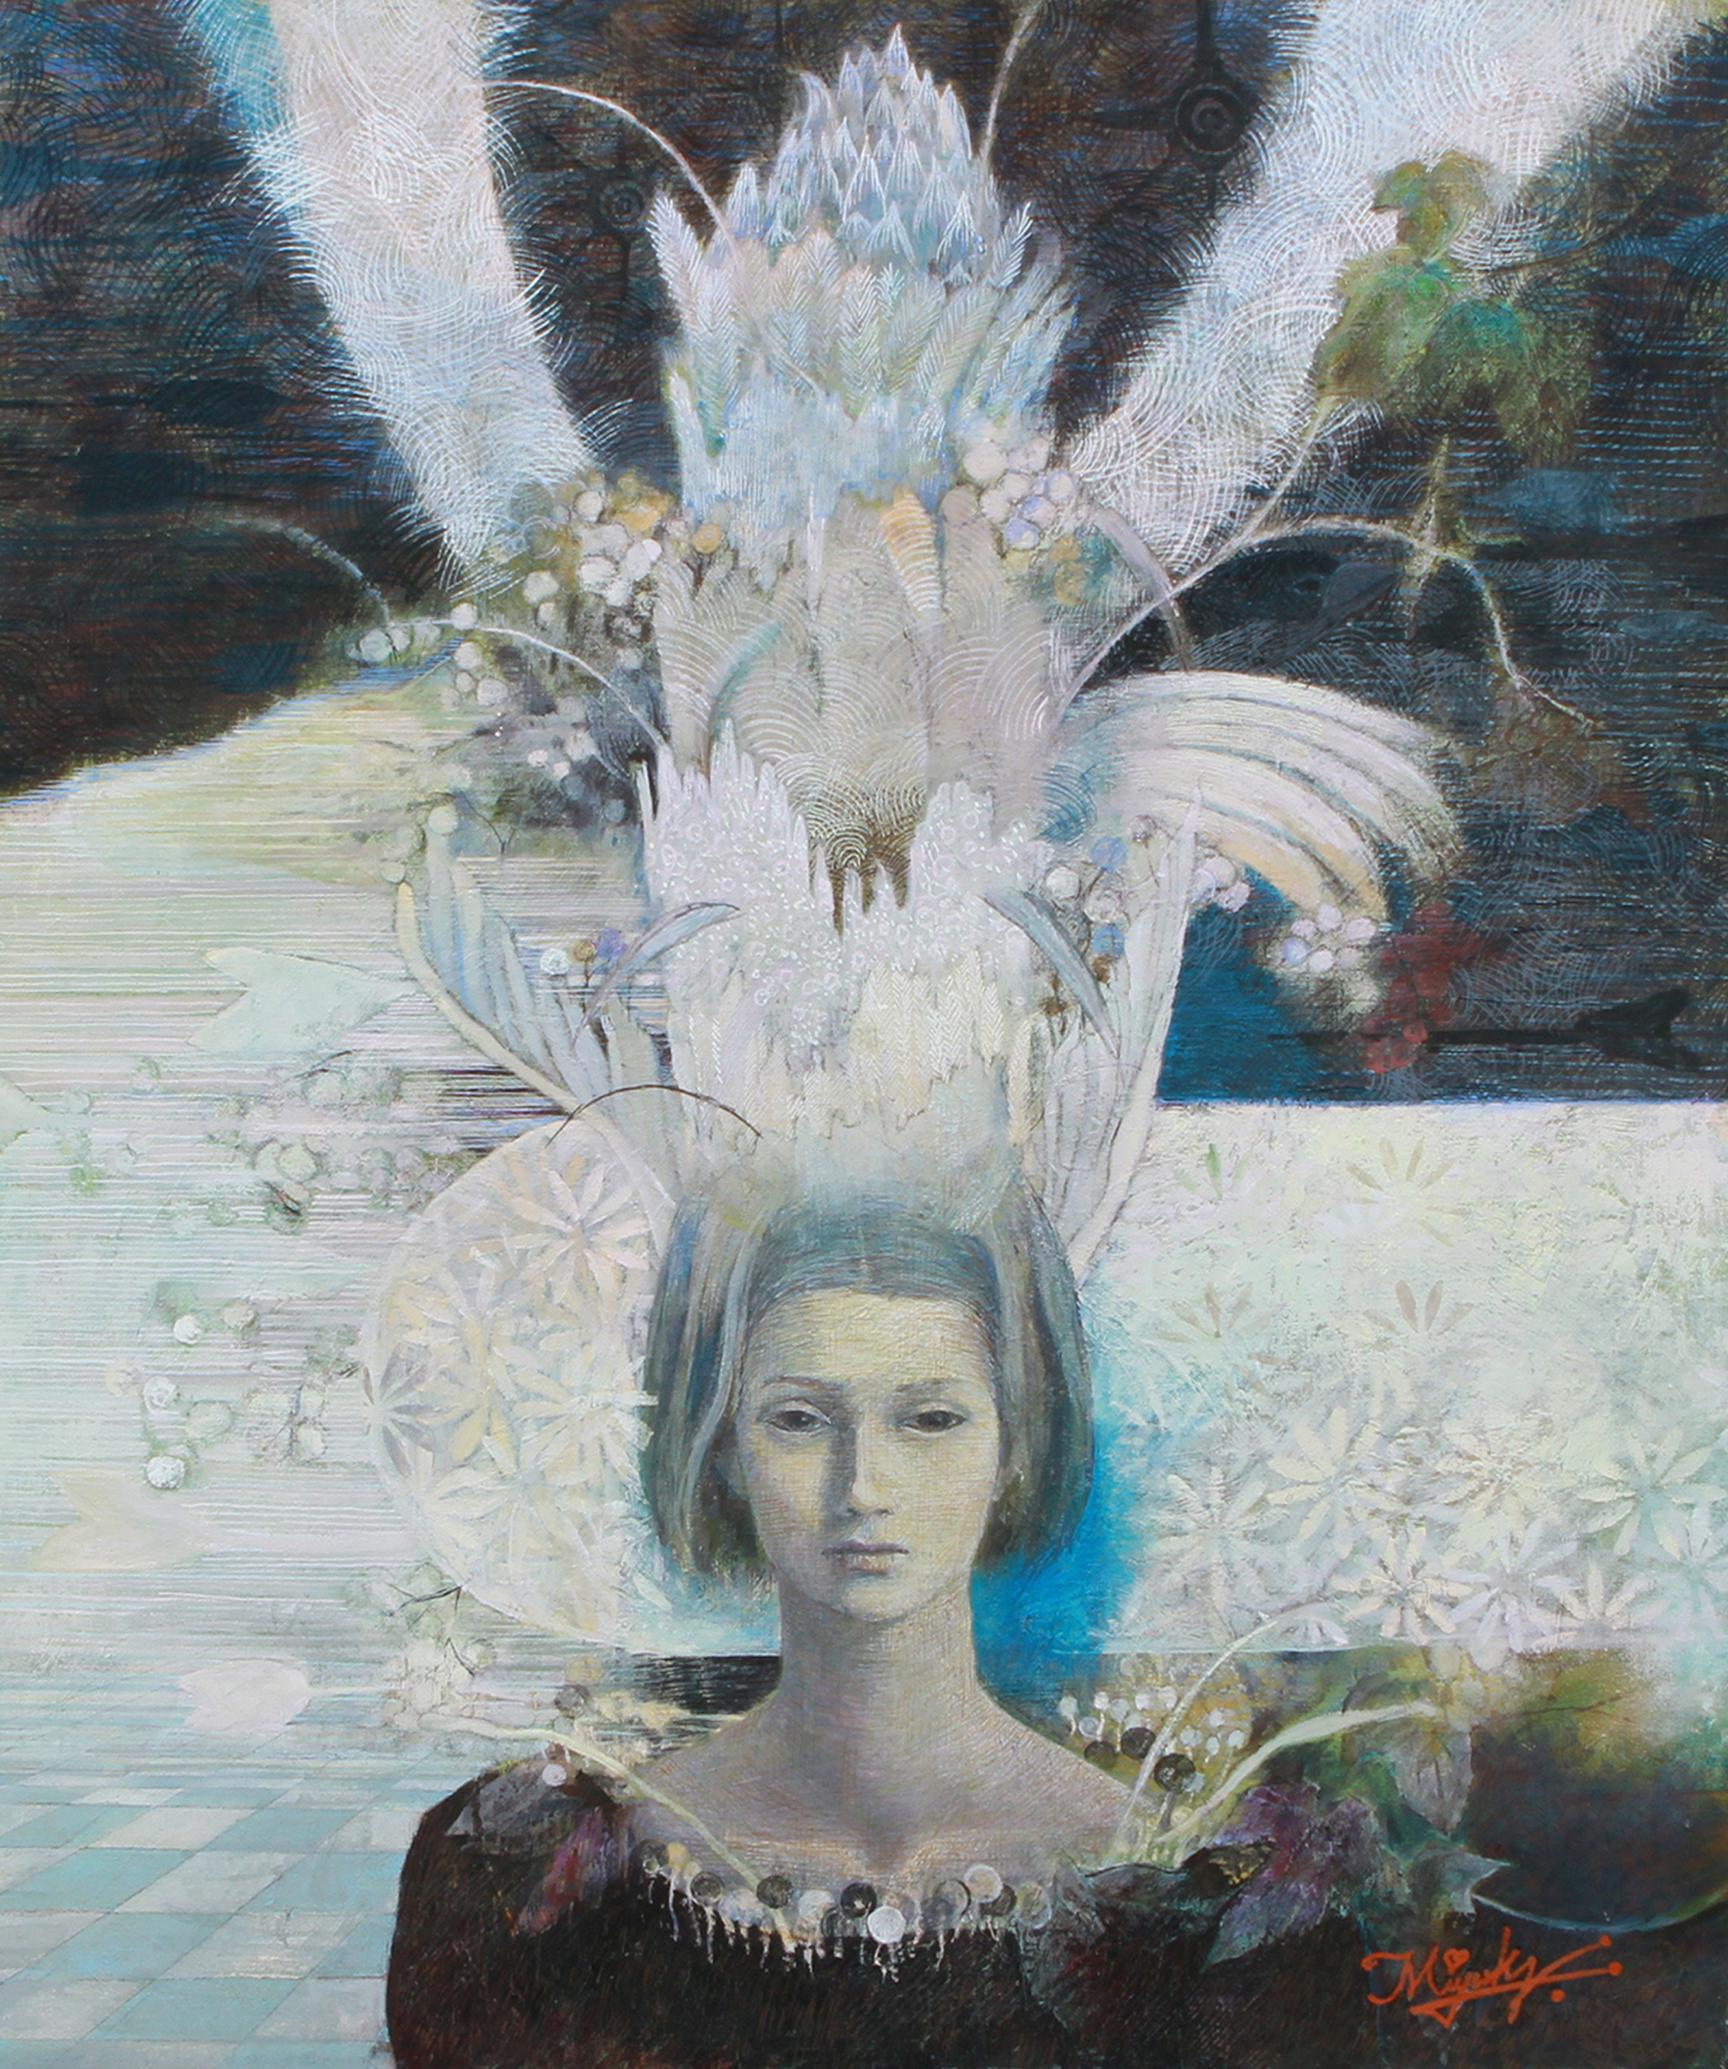 Huile et tempera sur toile

Miyuki Takanashi est une artiste japonaise née en 1961 qui vit et travaille à Sapporo au Japon. Elle est diplômée du département d'art de l'université d'éducation d'Hokkaido, à Iwamizawa. Ses principaux motifs sont les